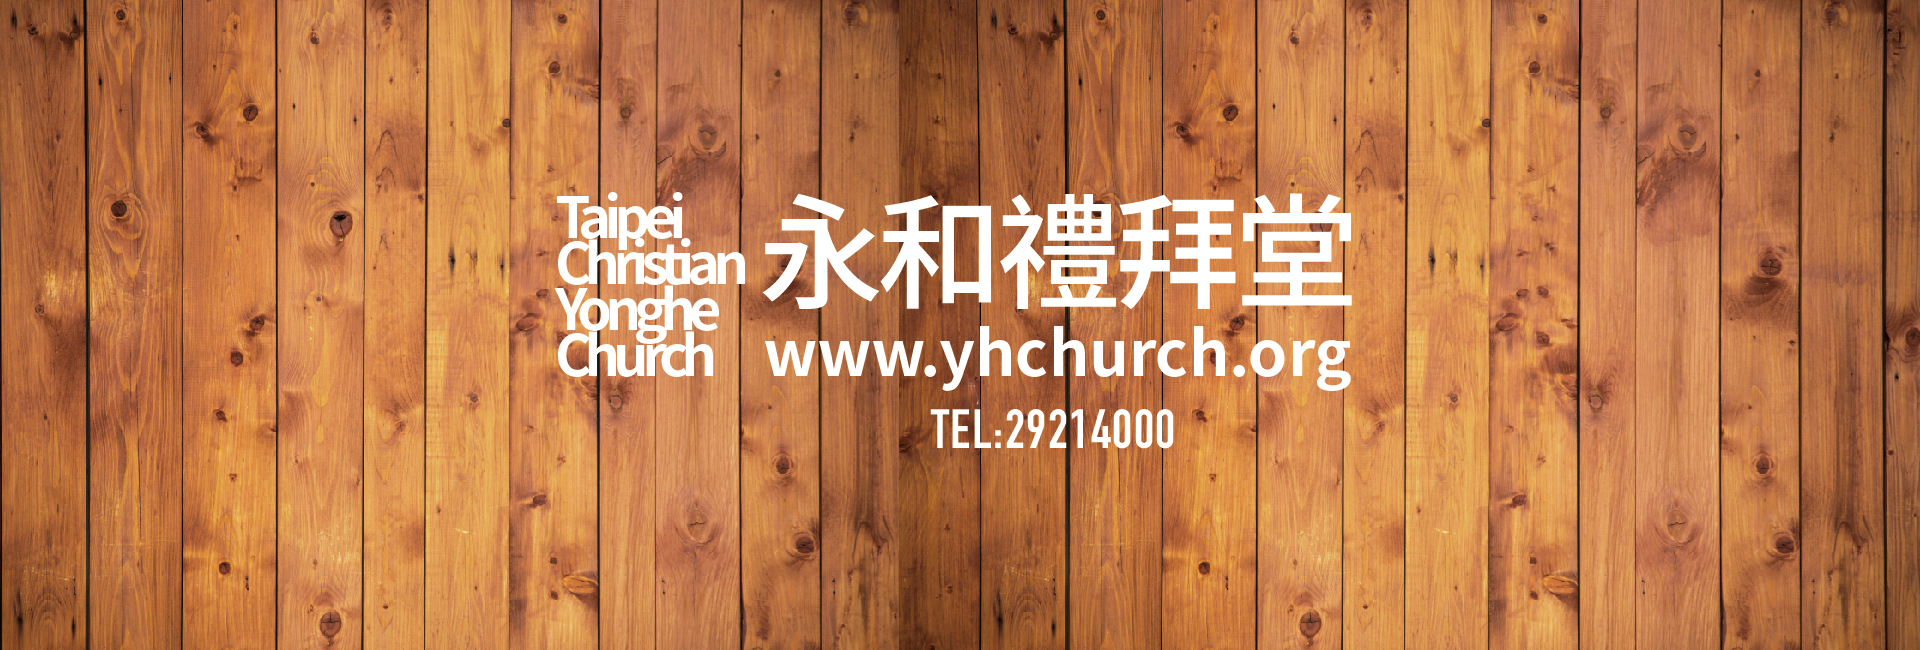 財團法人新北市台北基督徒永和禮拜堂-募款活動